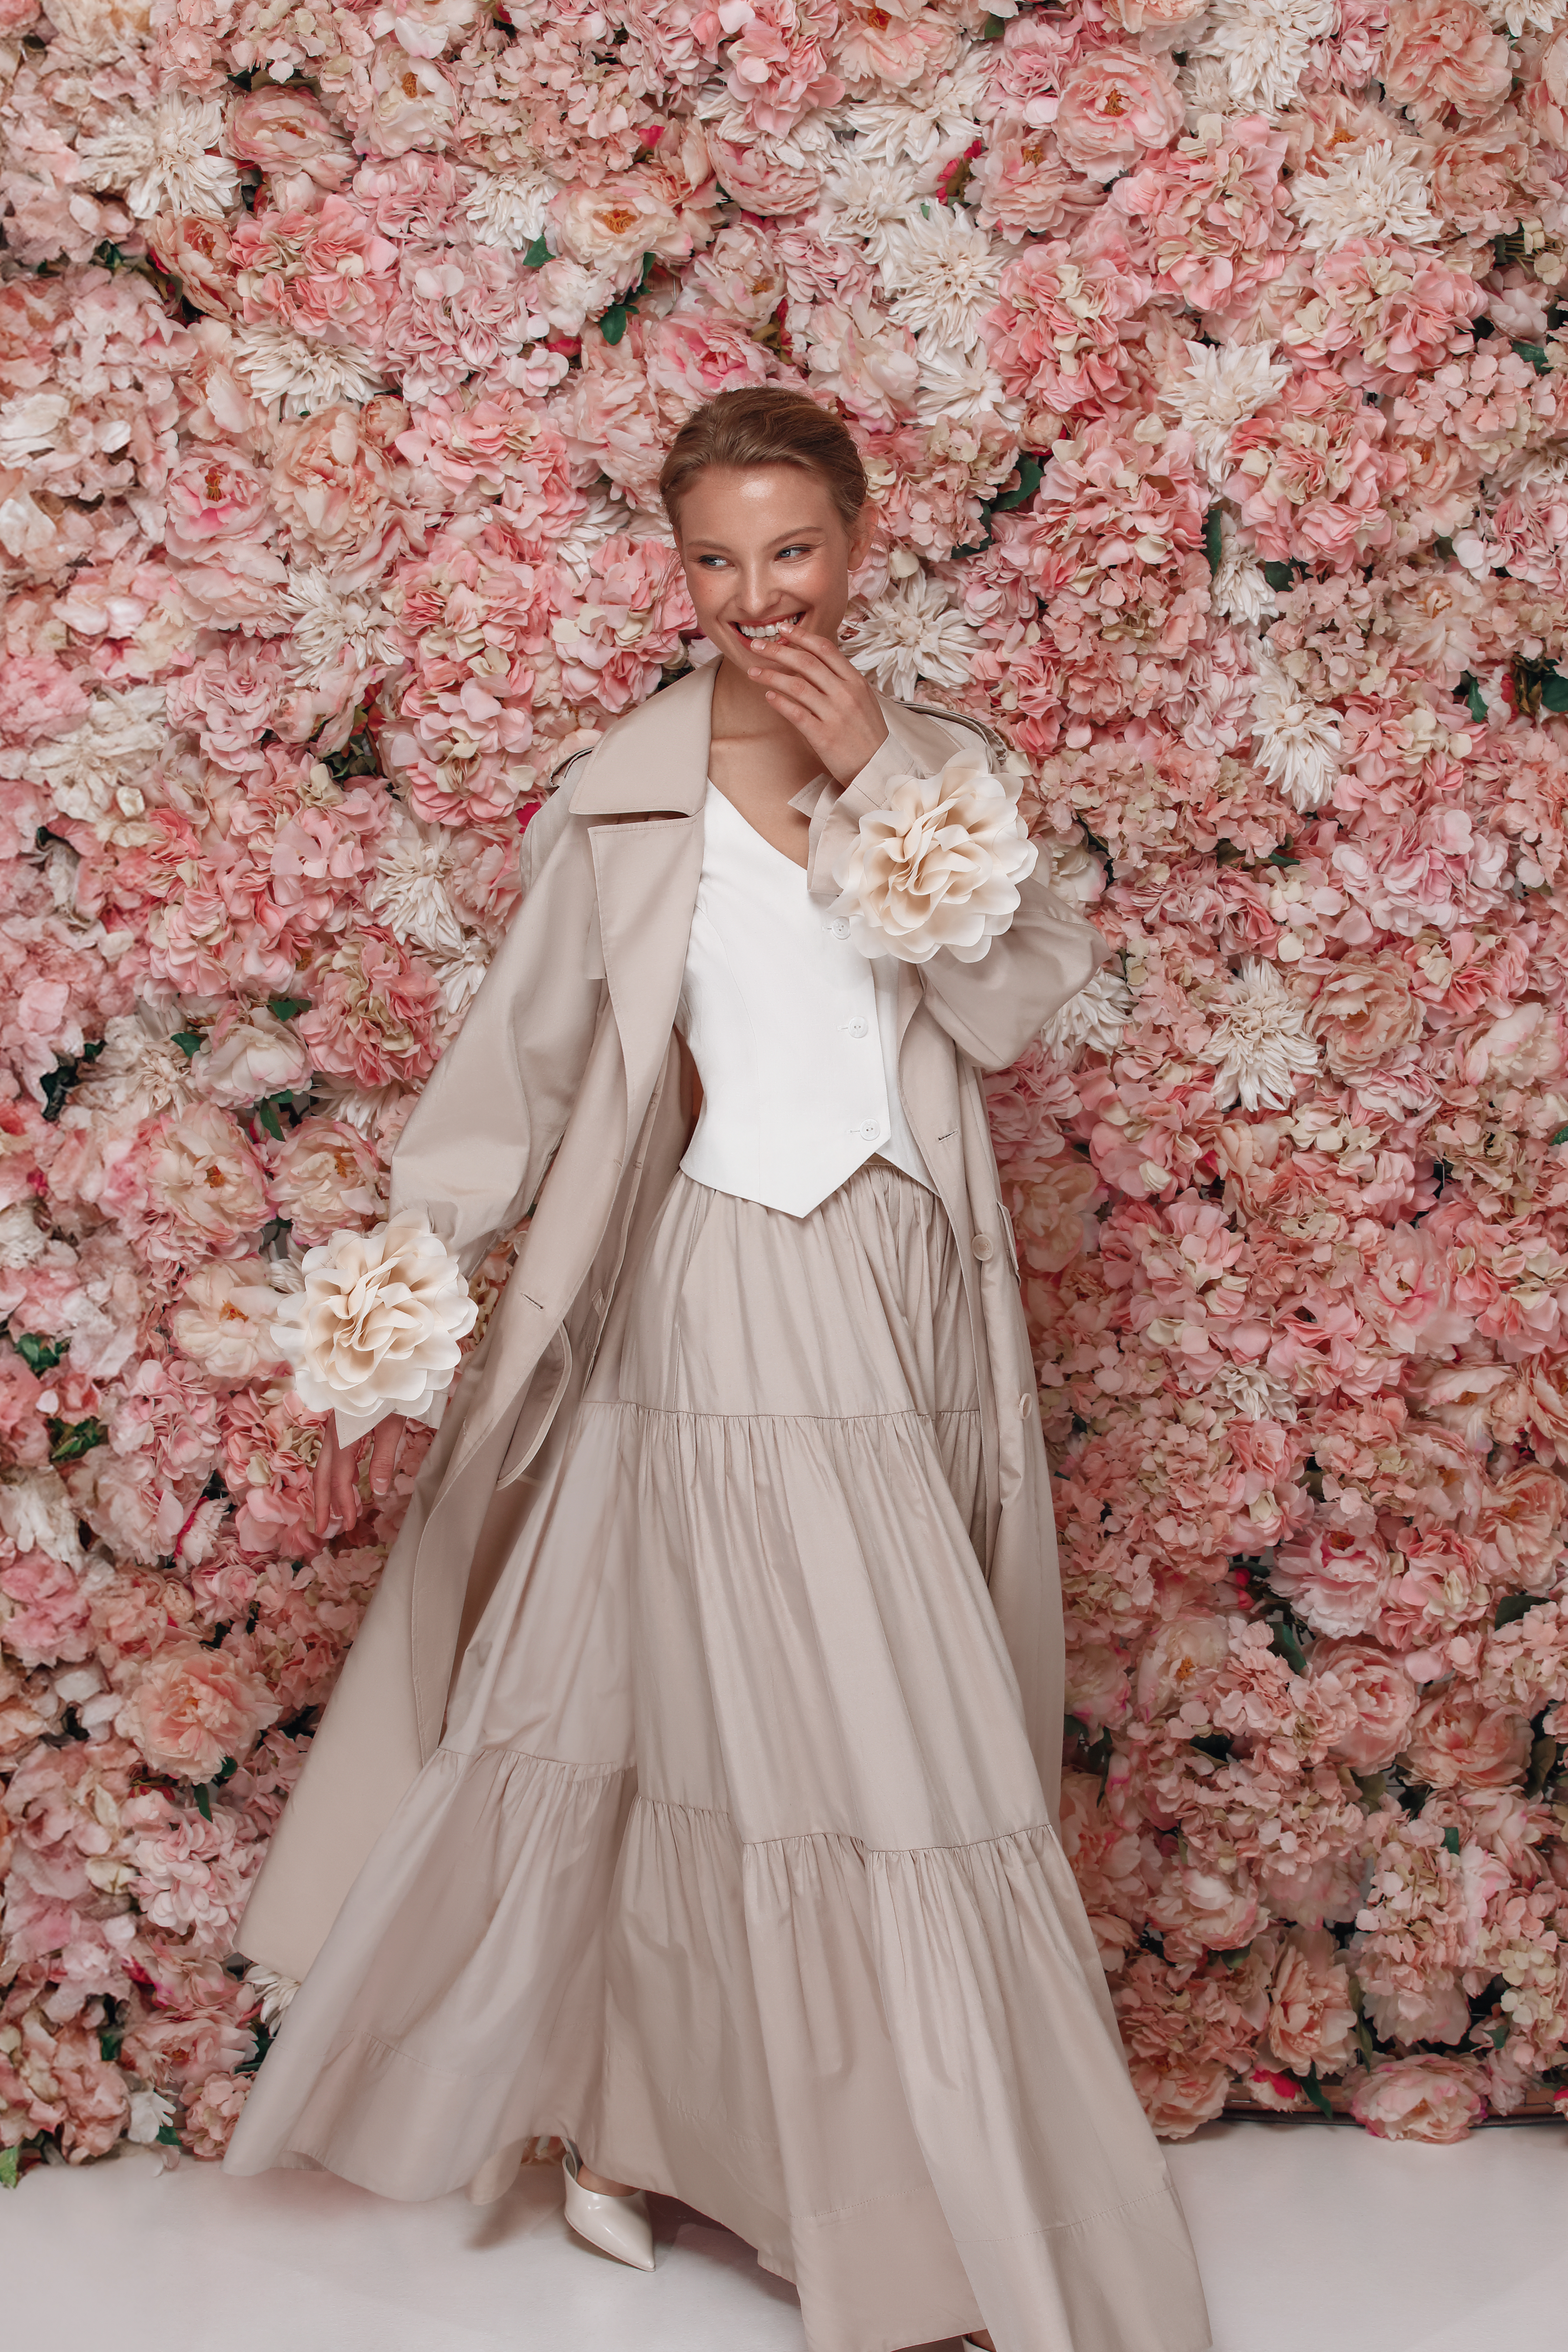 Андре Тан презентував нову колекцію жіночого одягу Blooms, кожна річ із якої 